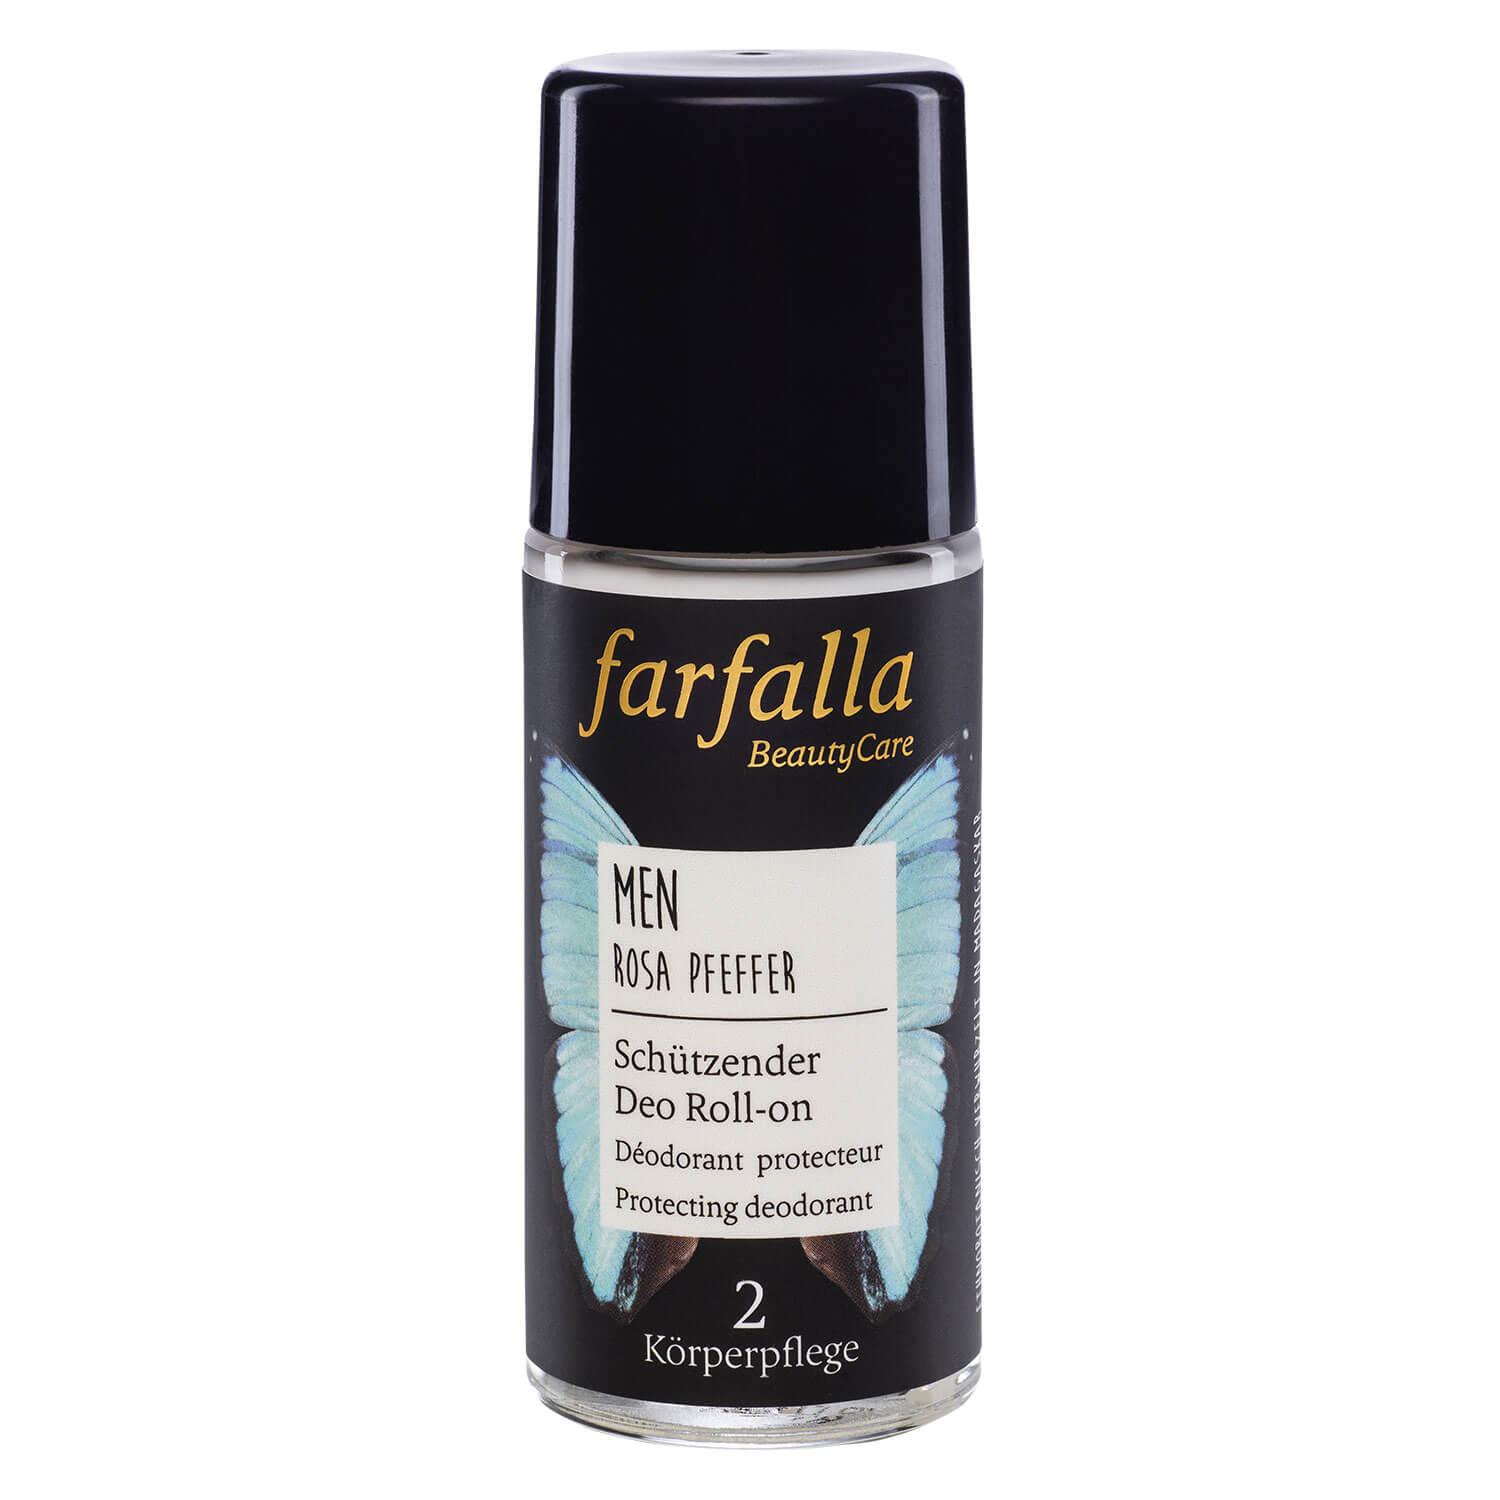 Farfalla Men - Rosa Pfeffer Protecting deodorant